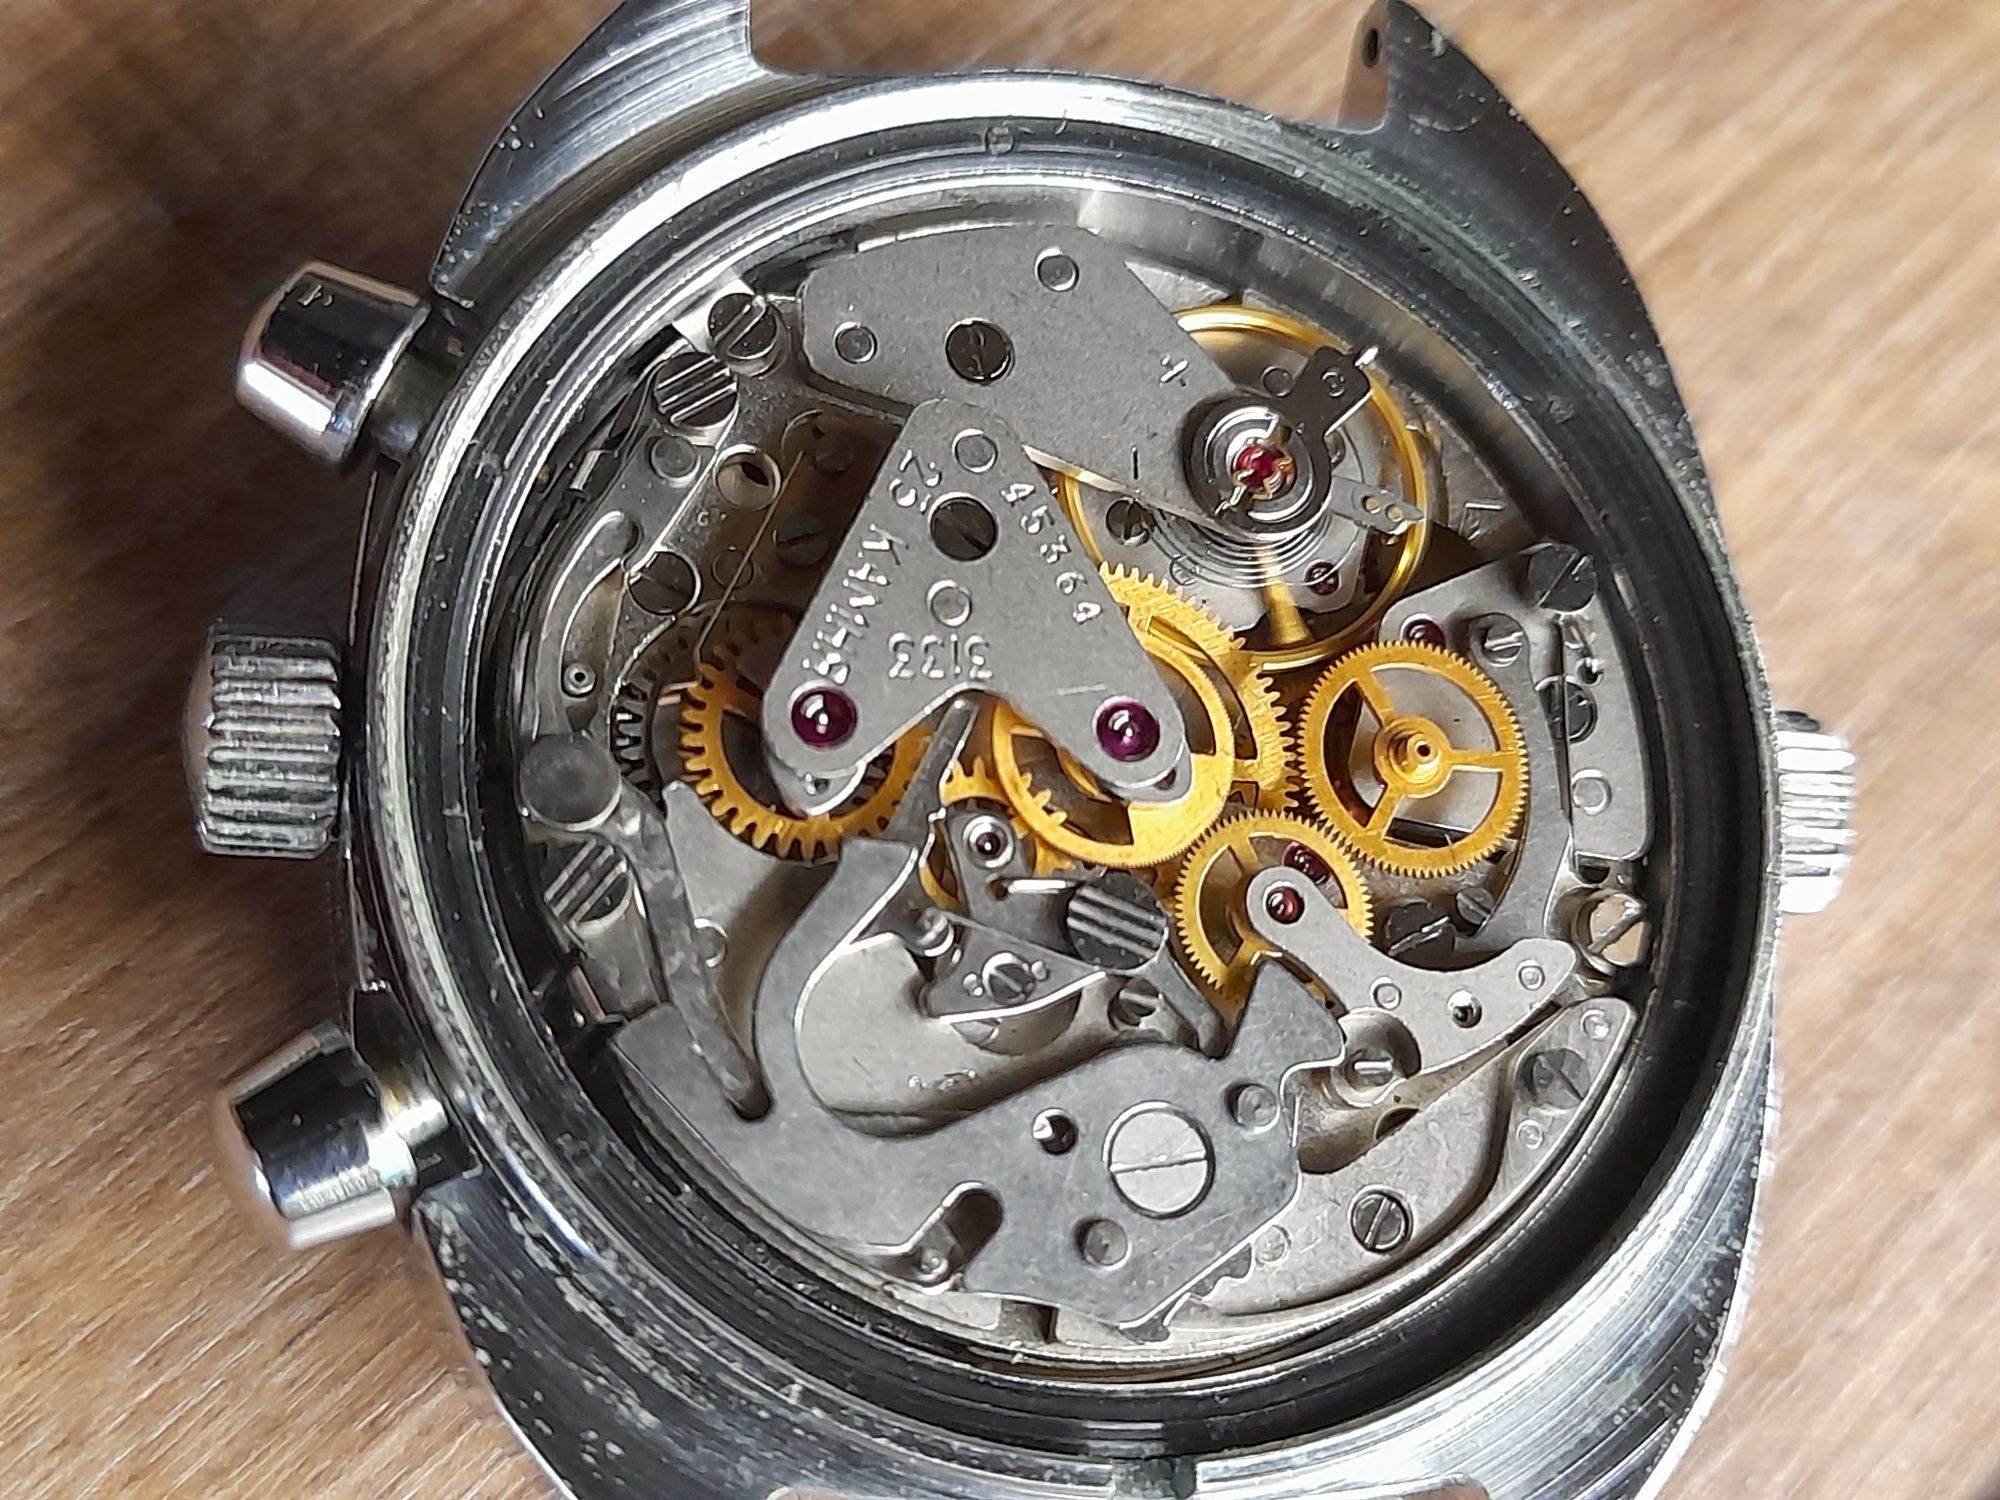 Zegarek Poljot chronograph.